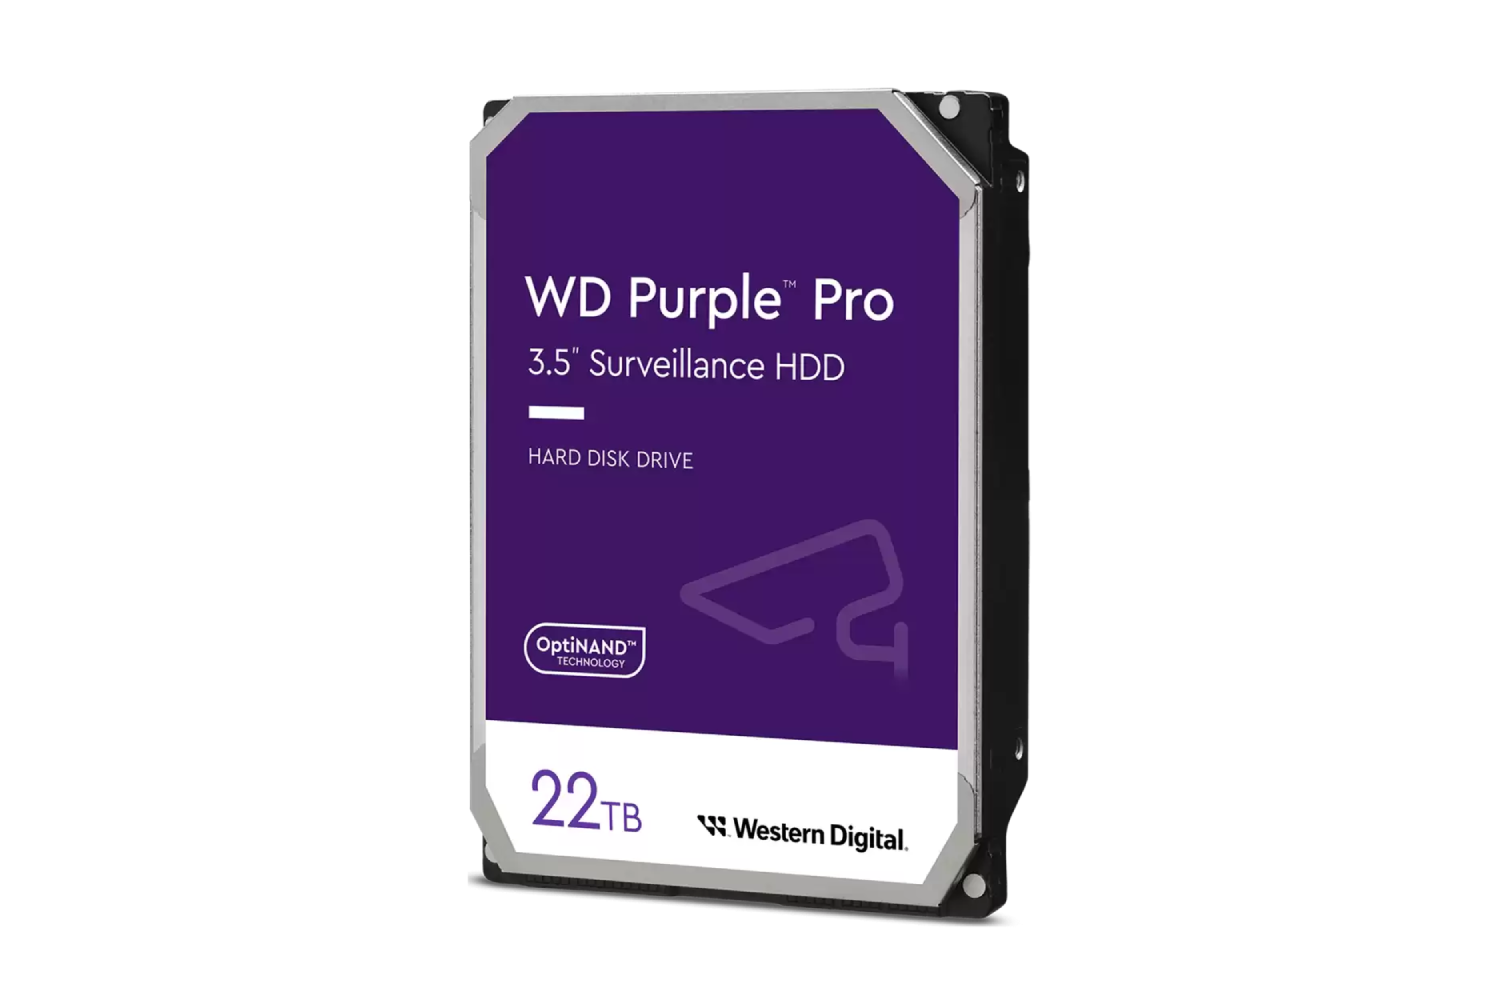 Western Digital 22TB WD Purple Pro Surveillance Internal Hard Drive HDD - SATA 6 Gb/s, 512 MB Cache, 3.5" - WD221PURP-Hard Drives-WESTERN DIGITAL-computerspace